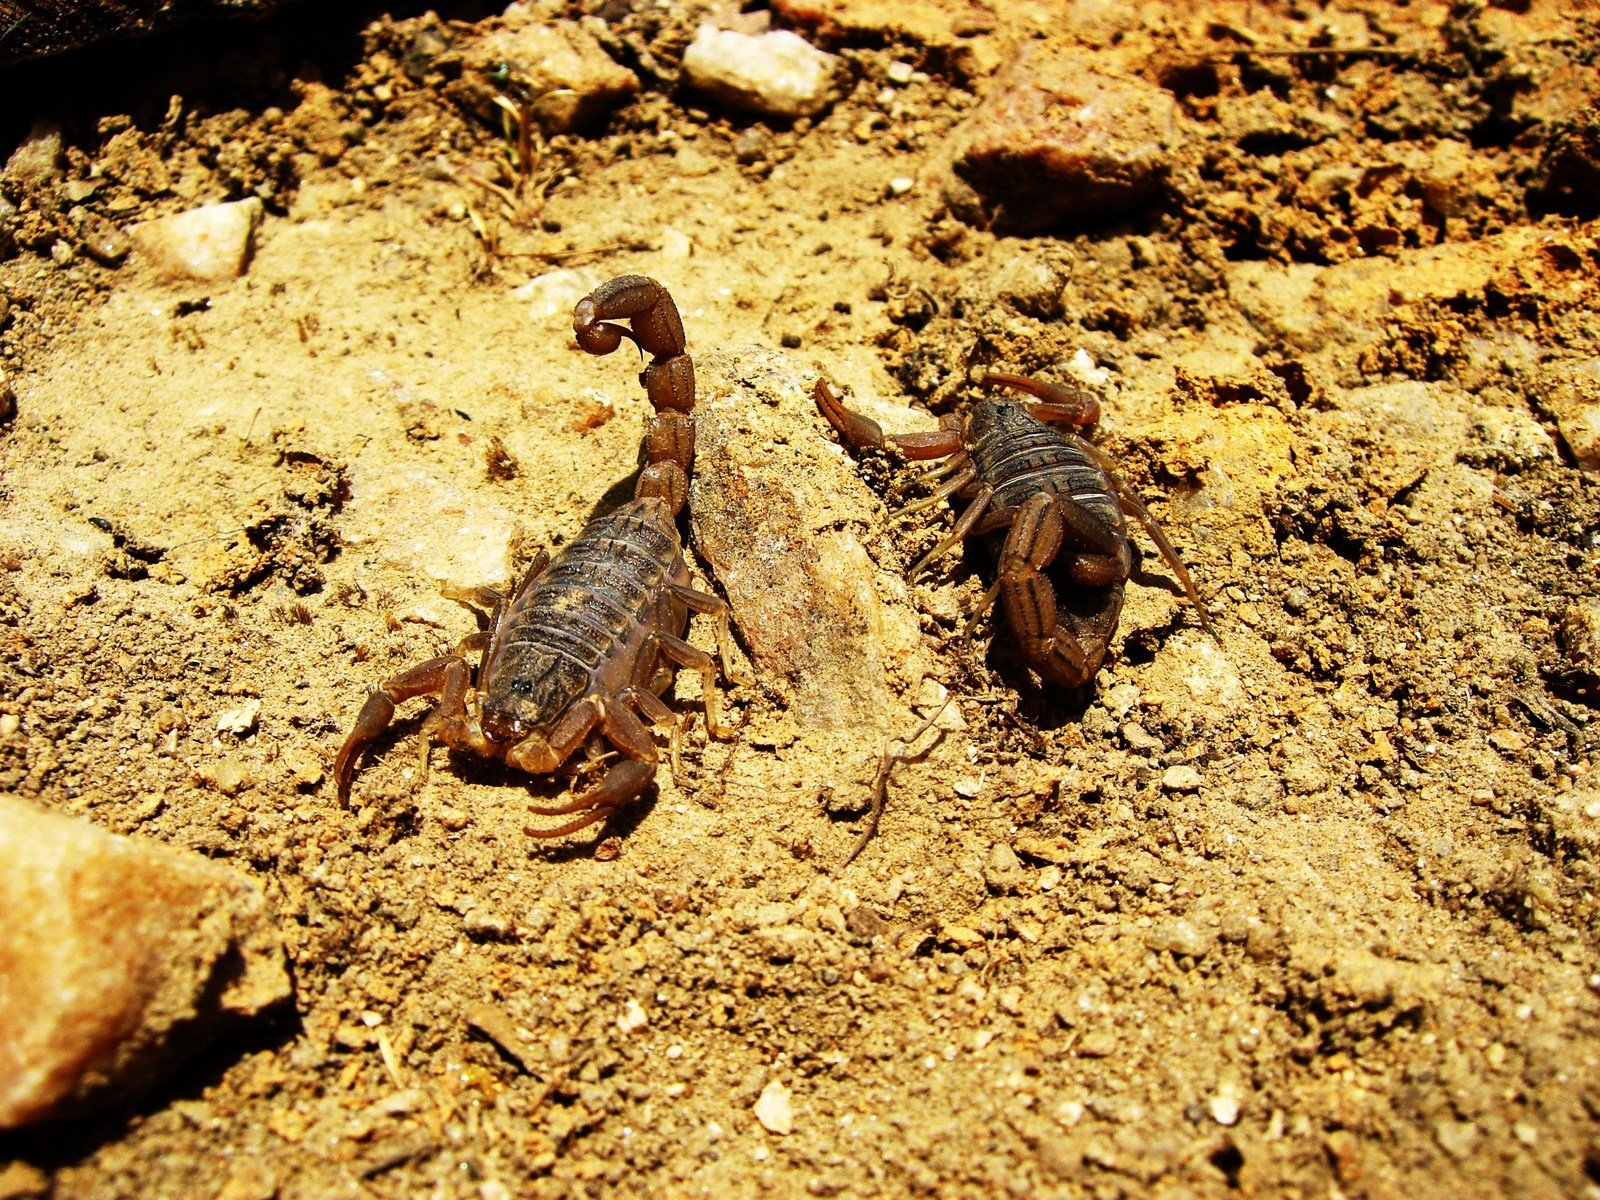 two little lizards walking across a dirt ground